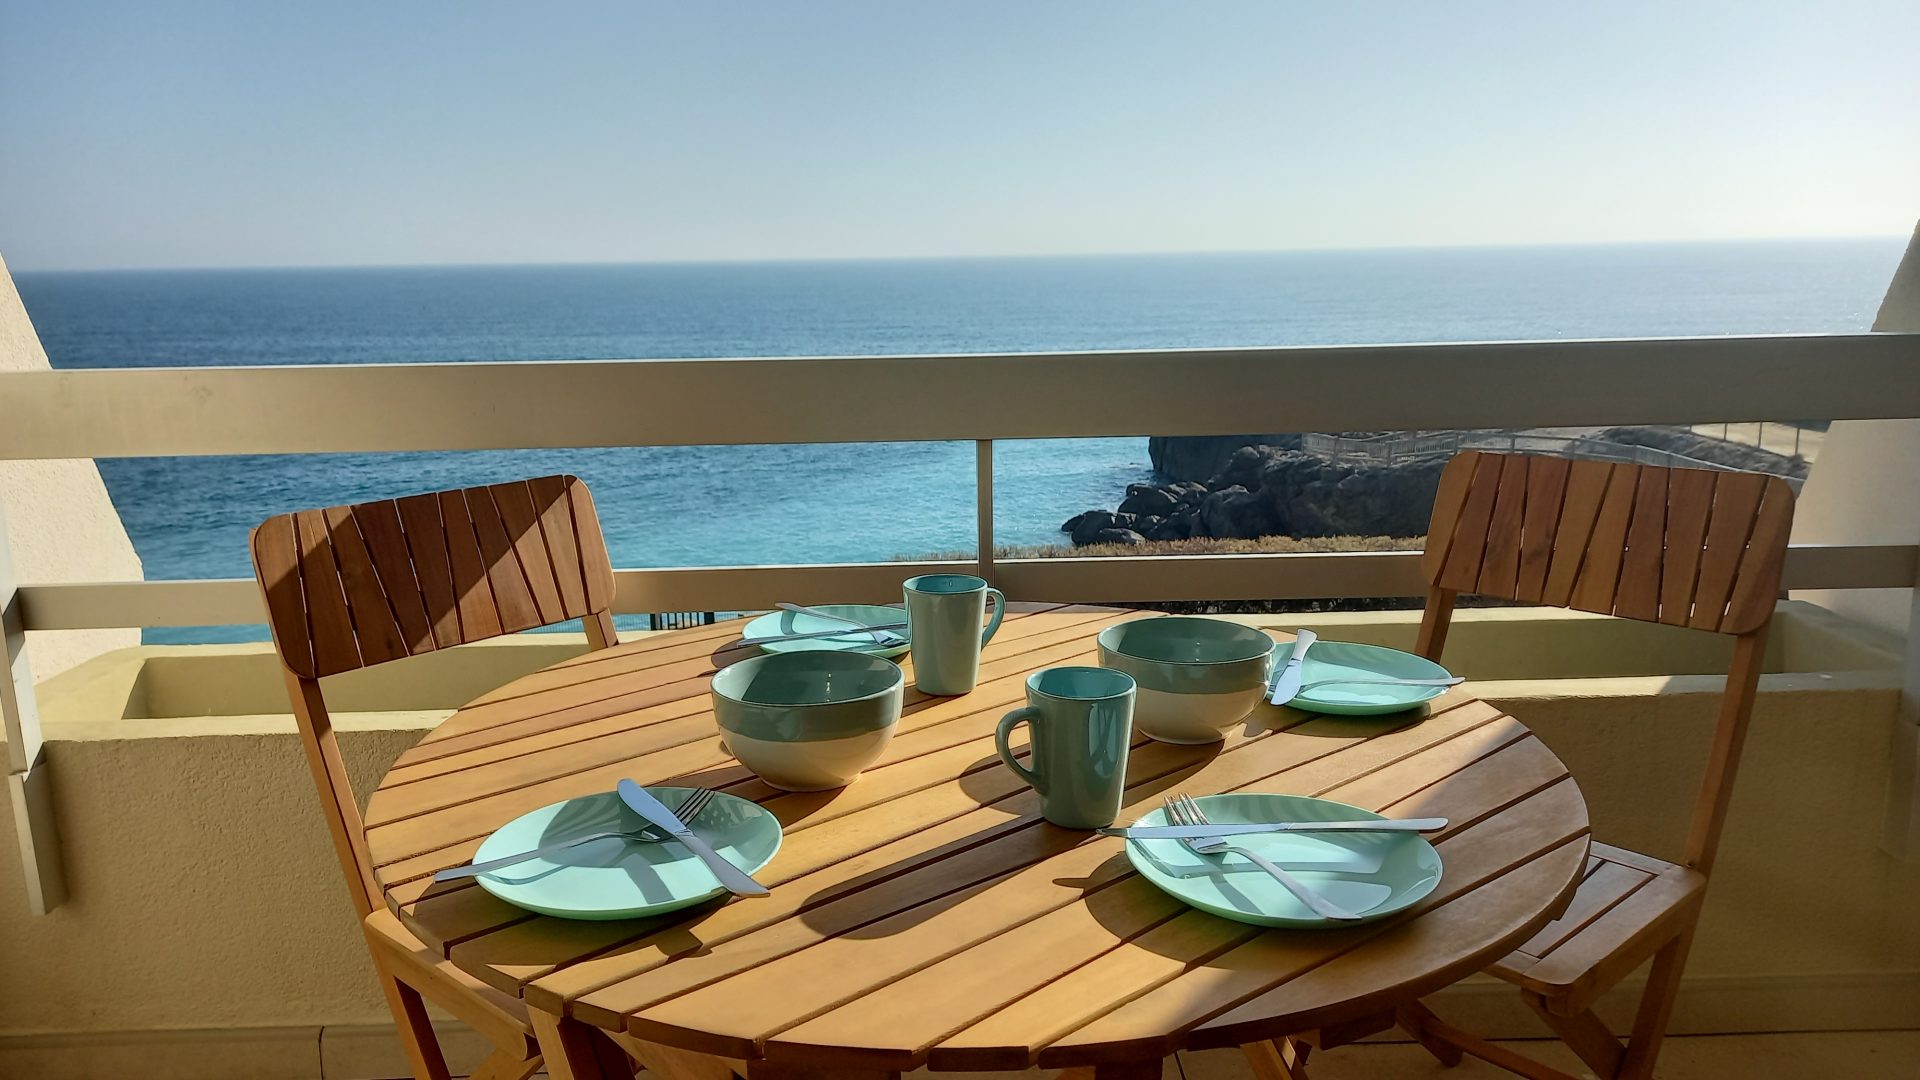 Petit déjeuner sur la terrasse, face à l'horizon